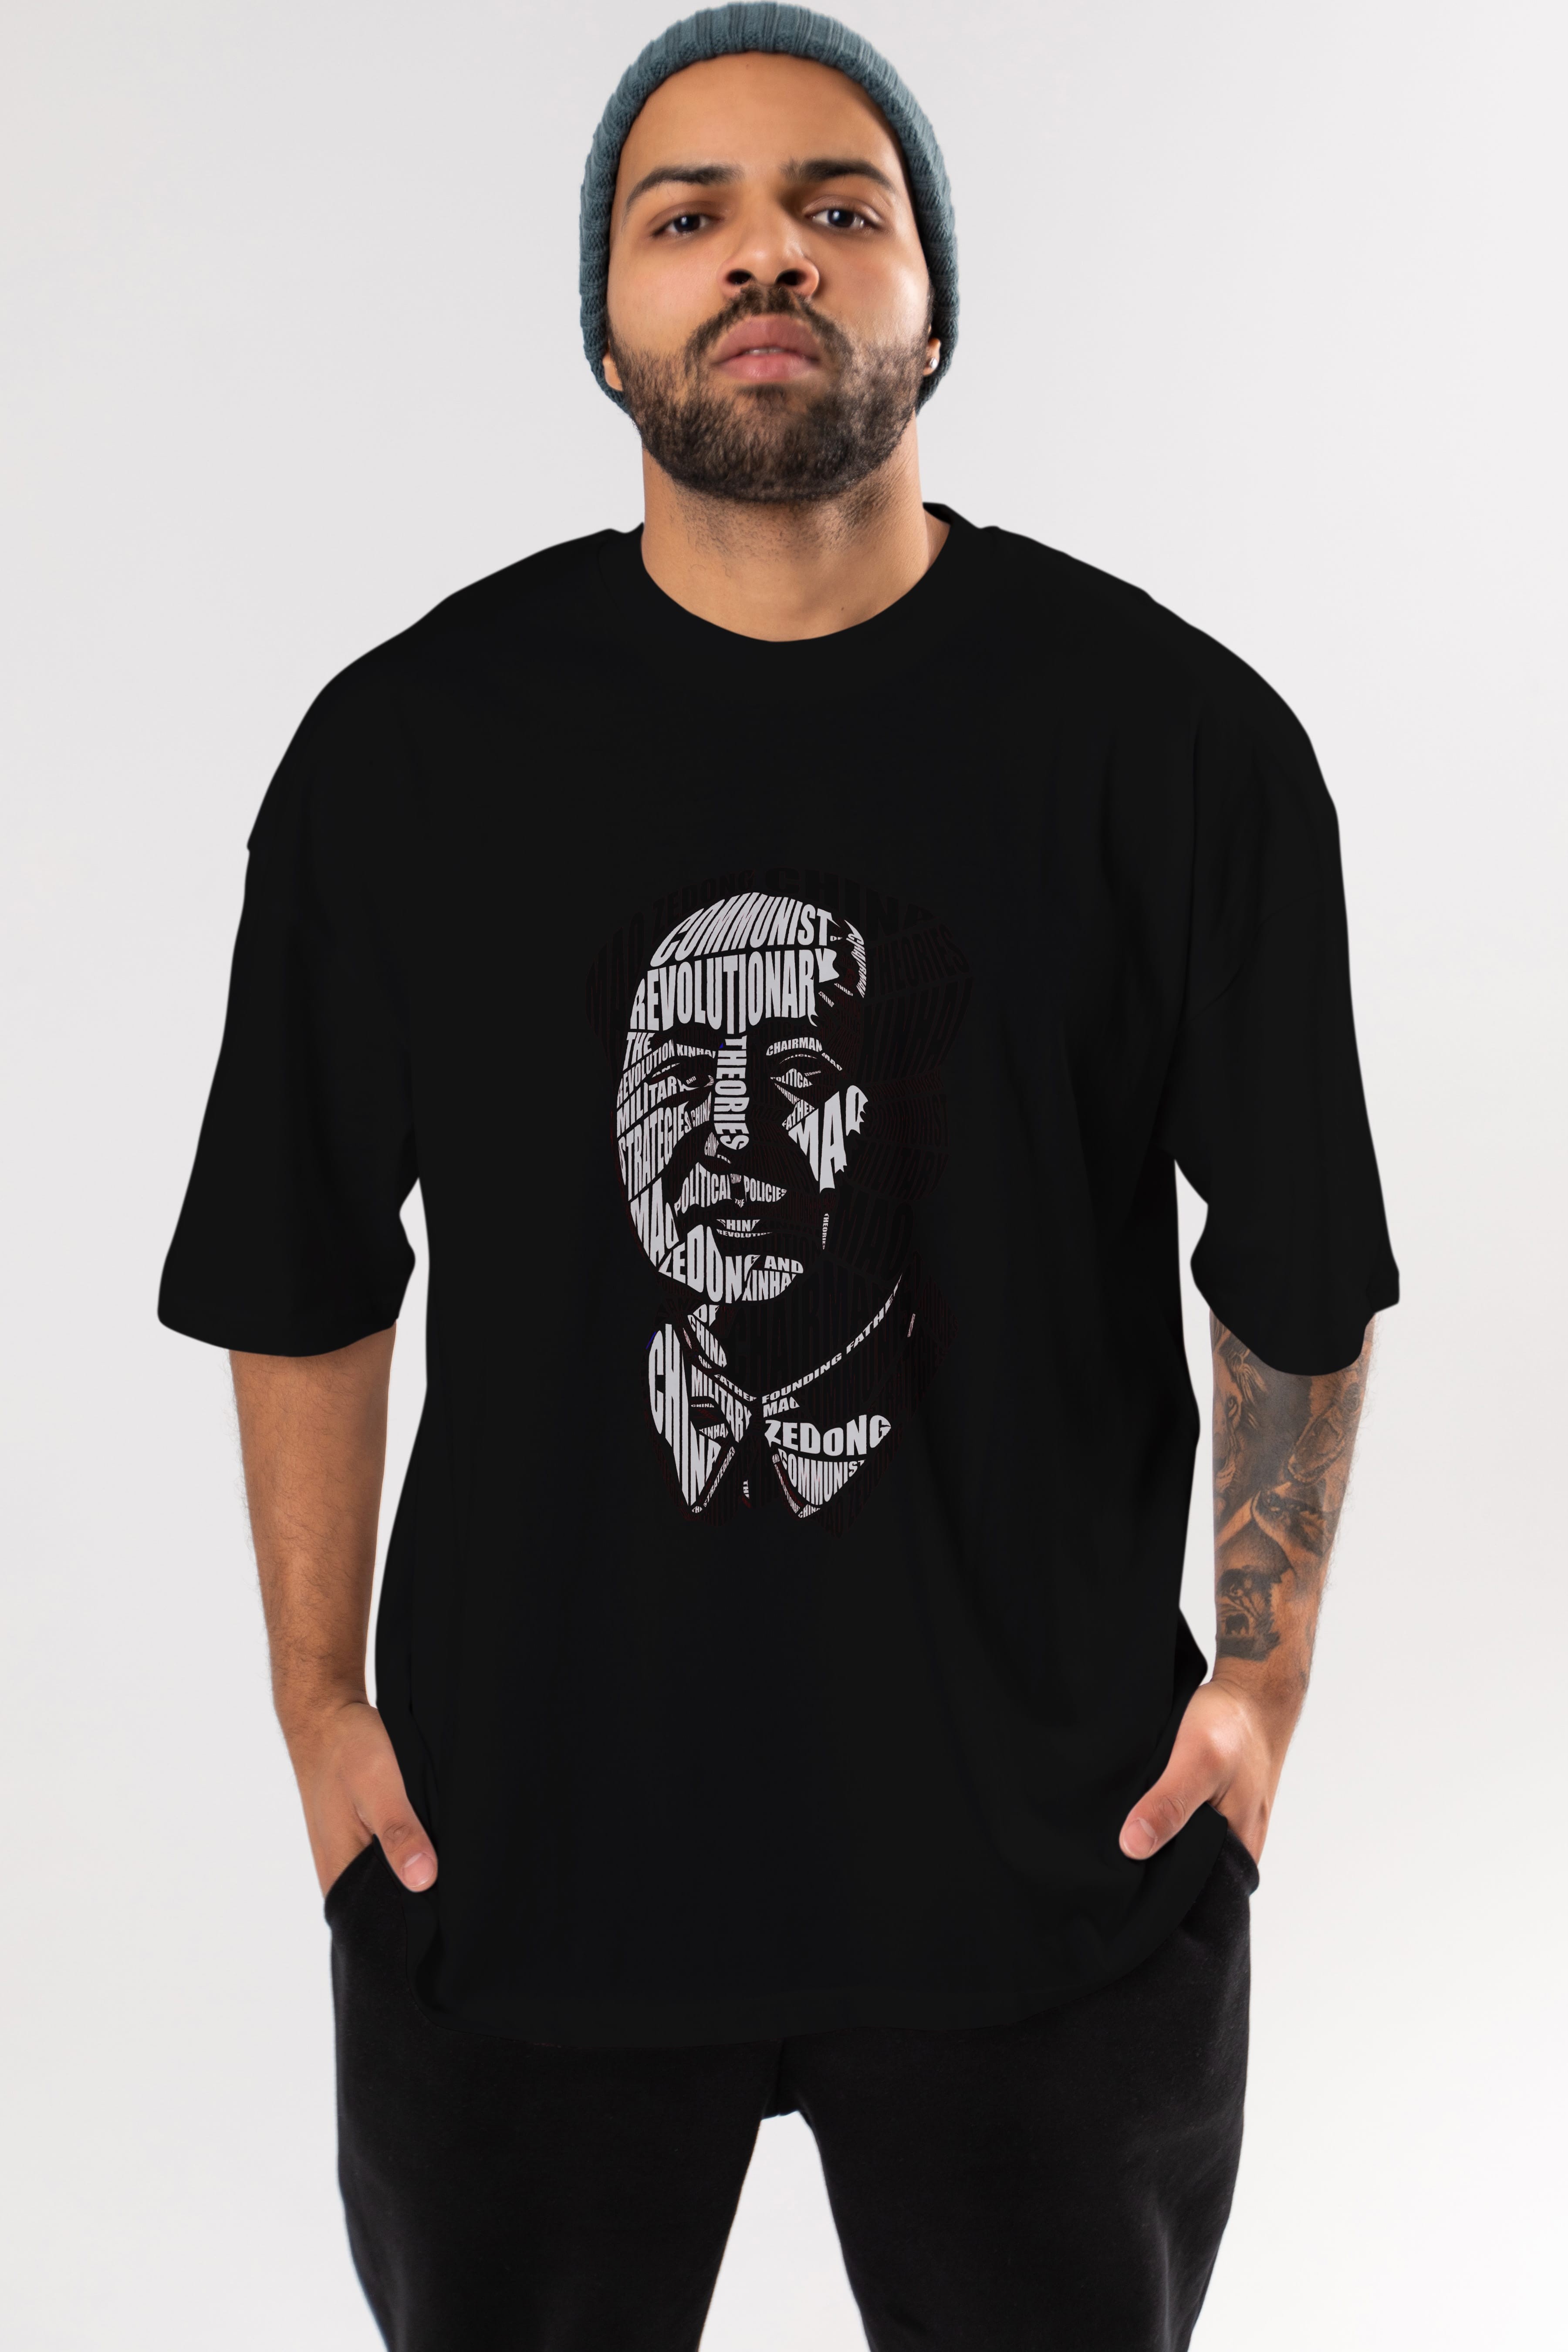 Mao Zedong Calligram Ön Baskılı Oversize t-shirt %100 pamuk Erkek Kadın Unisex